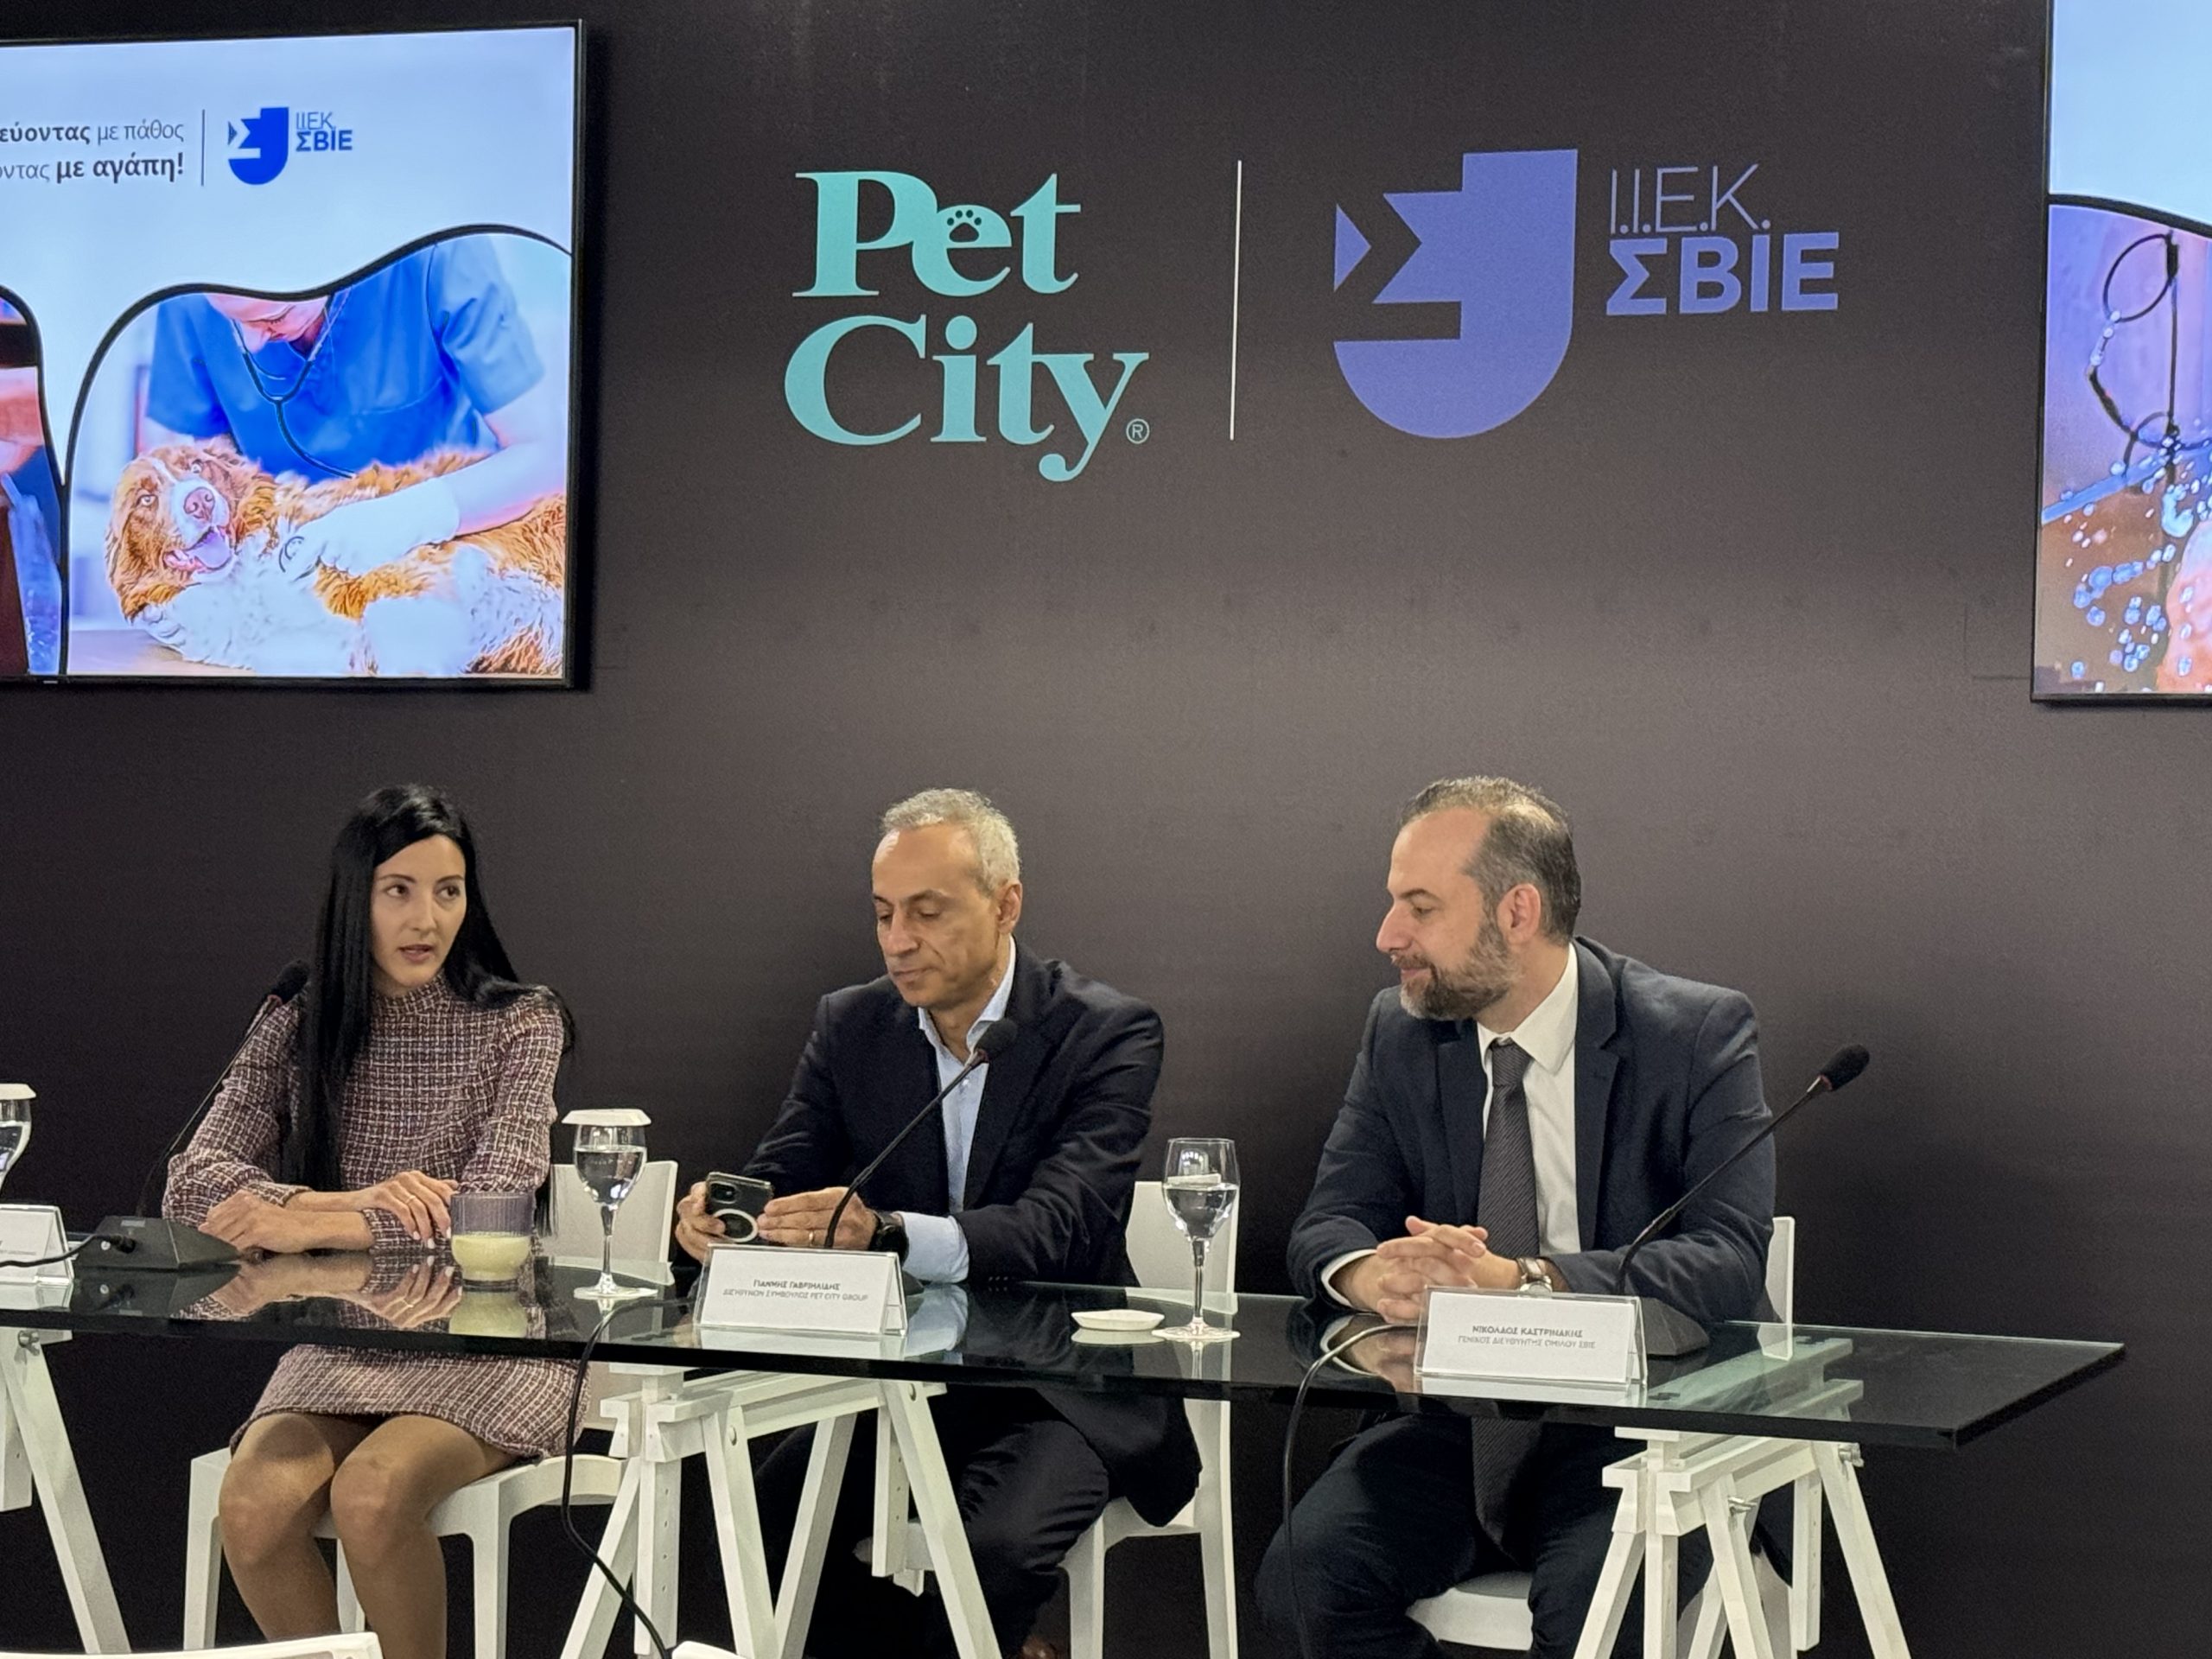 Pet City και ΙΕΚ ΣΒΙΕ ενώνουν τις δυνάμεις τους δημιουργώντας τα επαγγέλματα του μέλλοντος